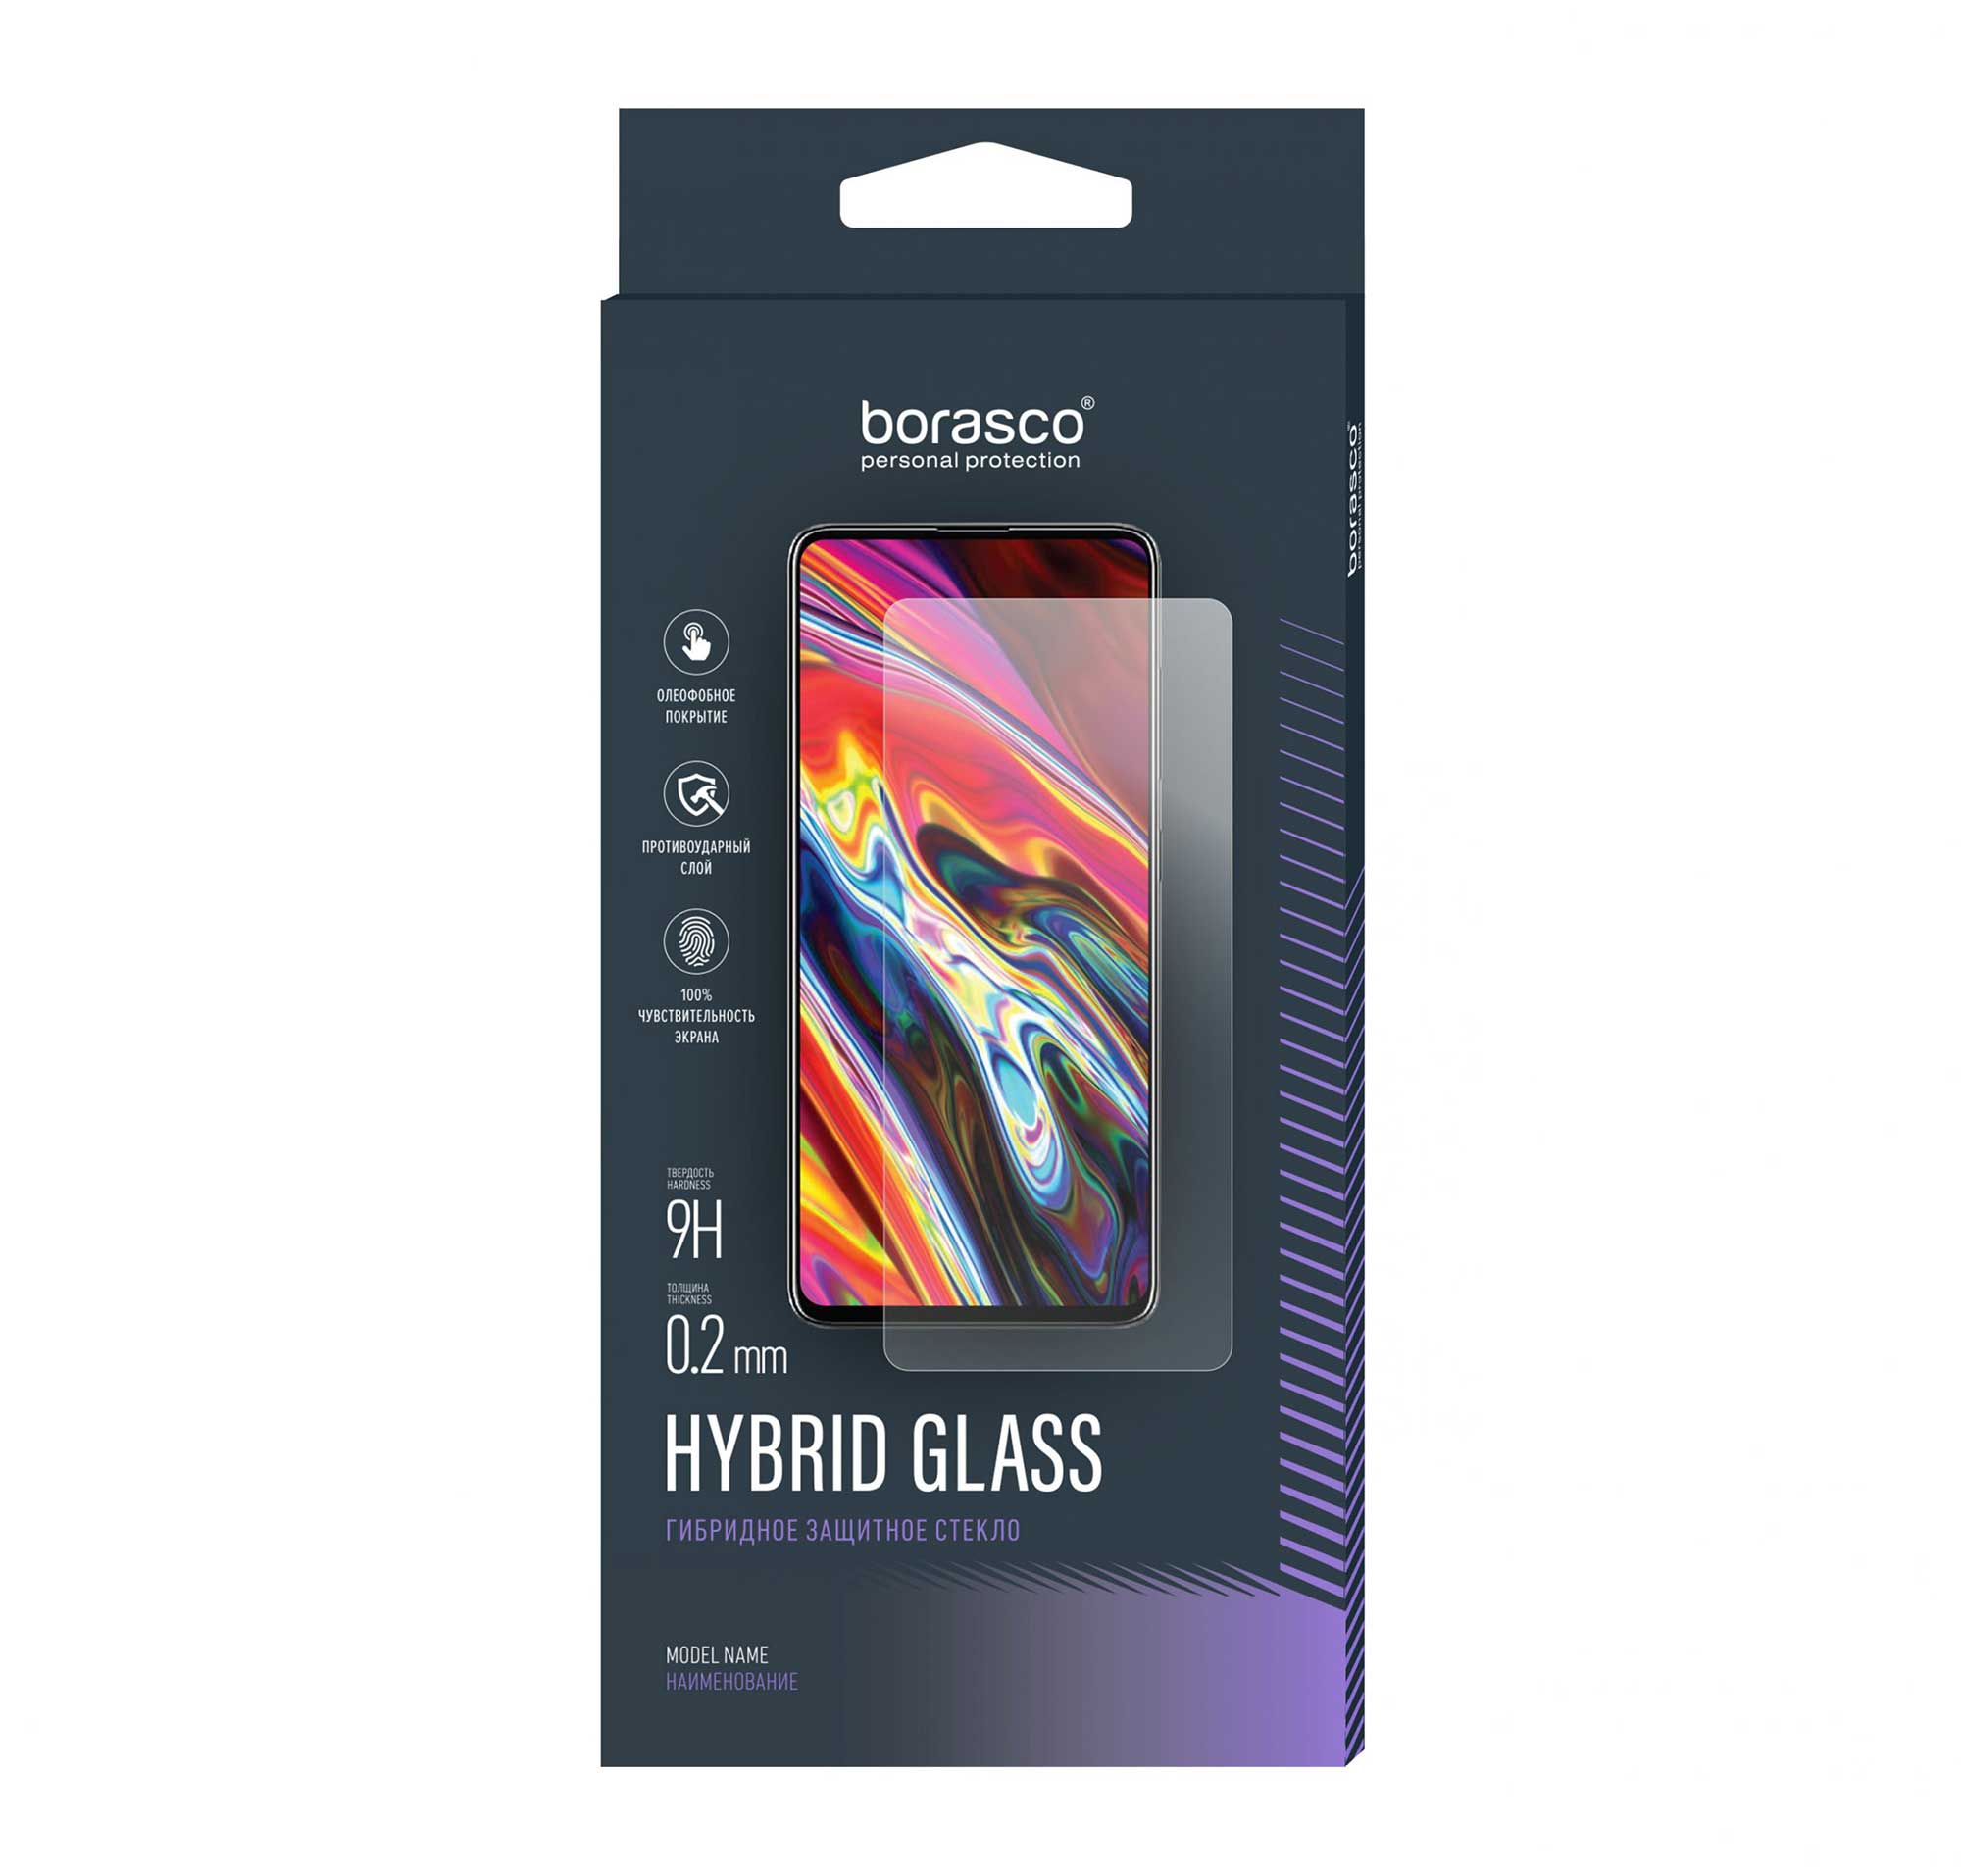 Защитное стекло Hybrid Glass для Huawei P40 цена и фото